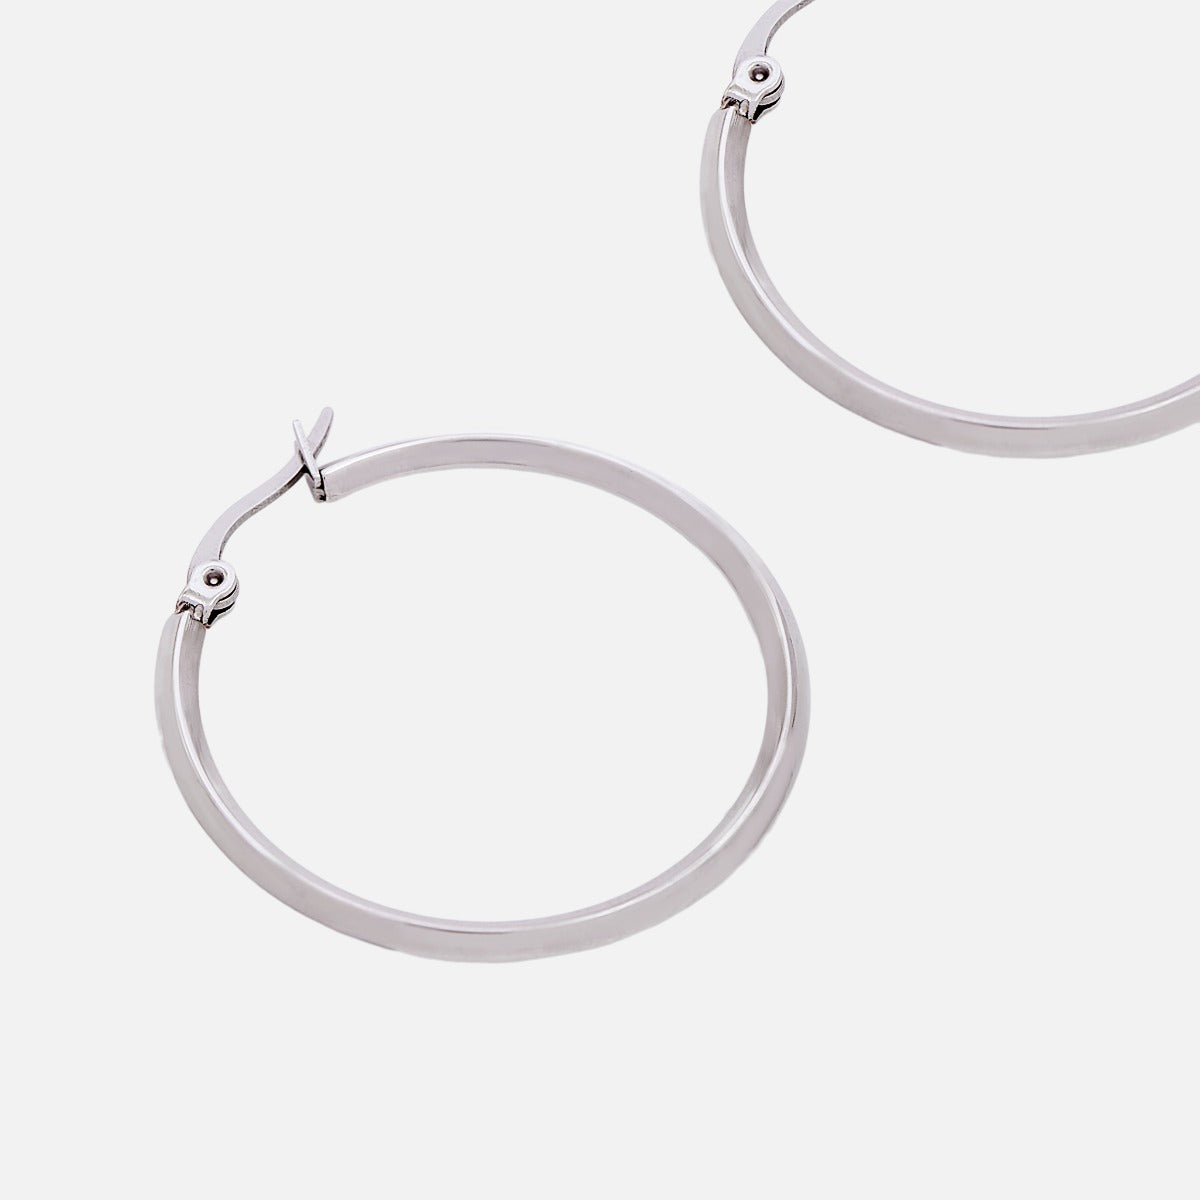 30 mm silvered wide hoop earrings in stainless steel